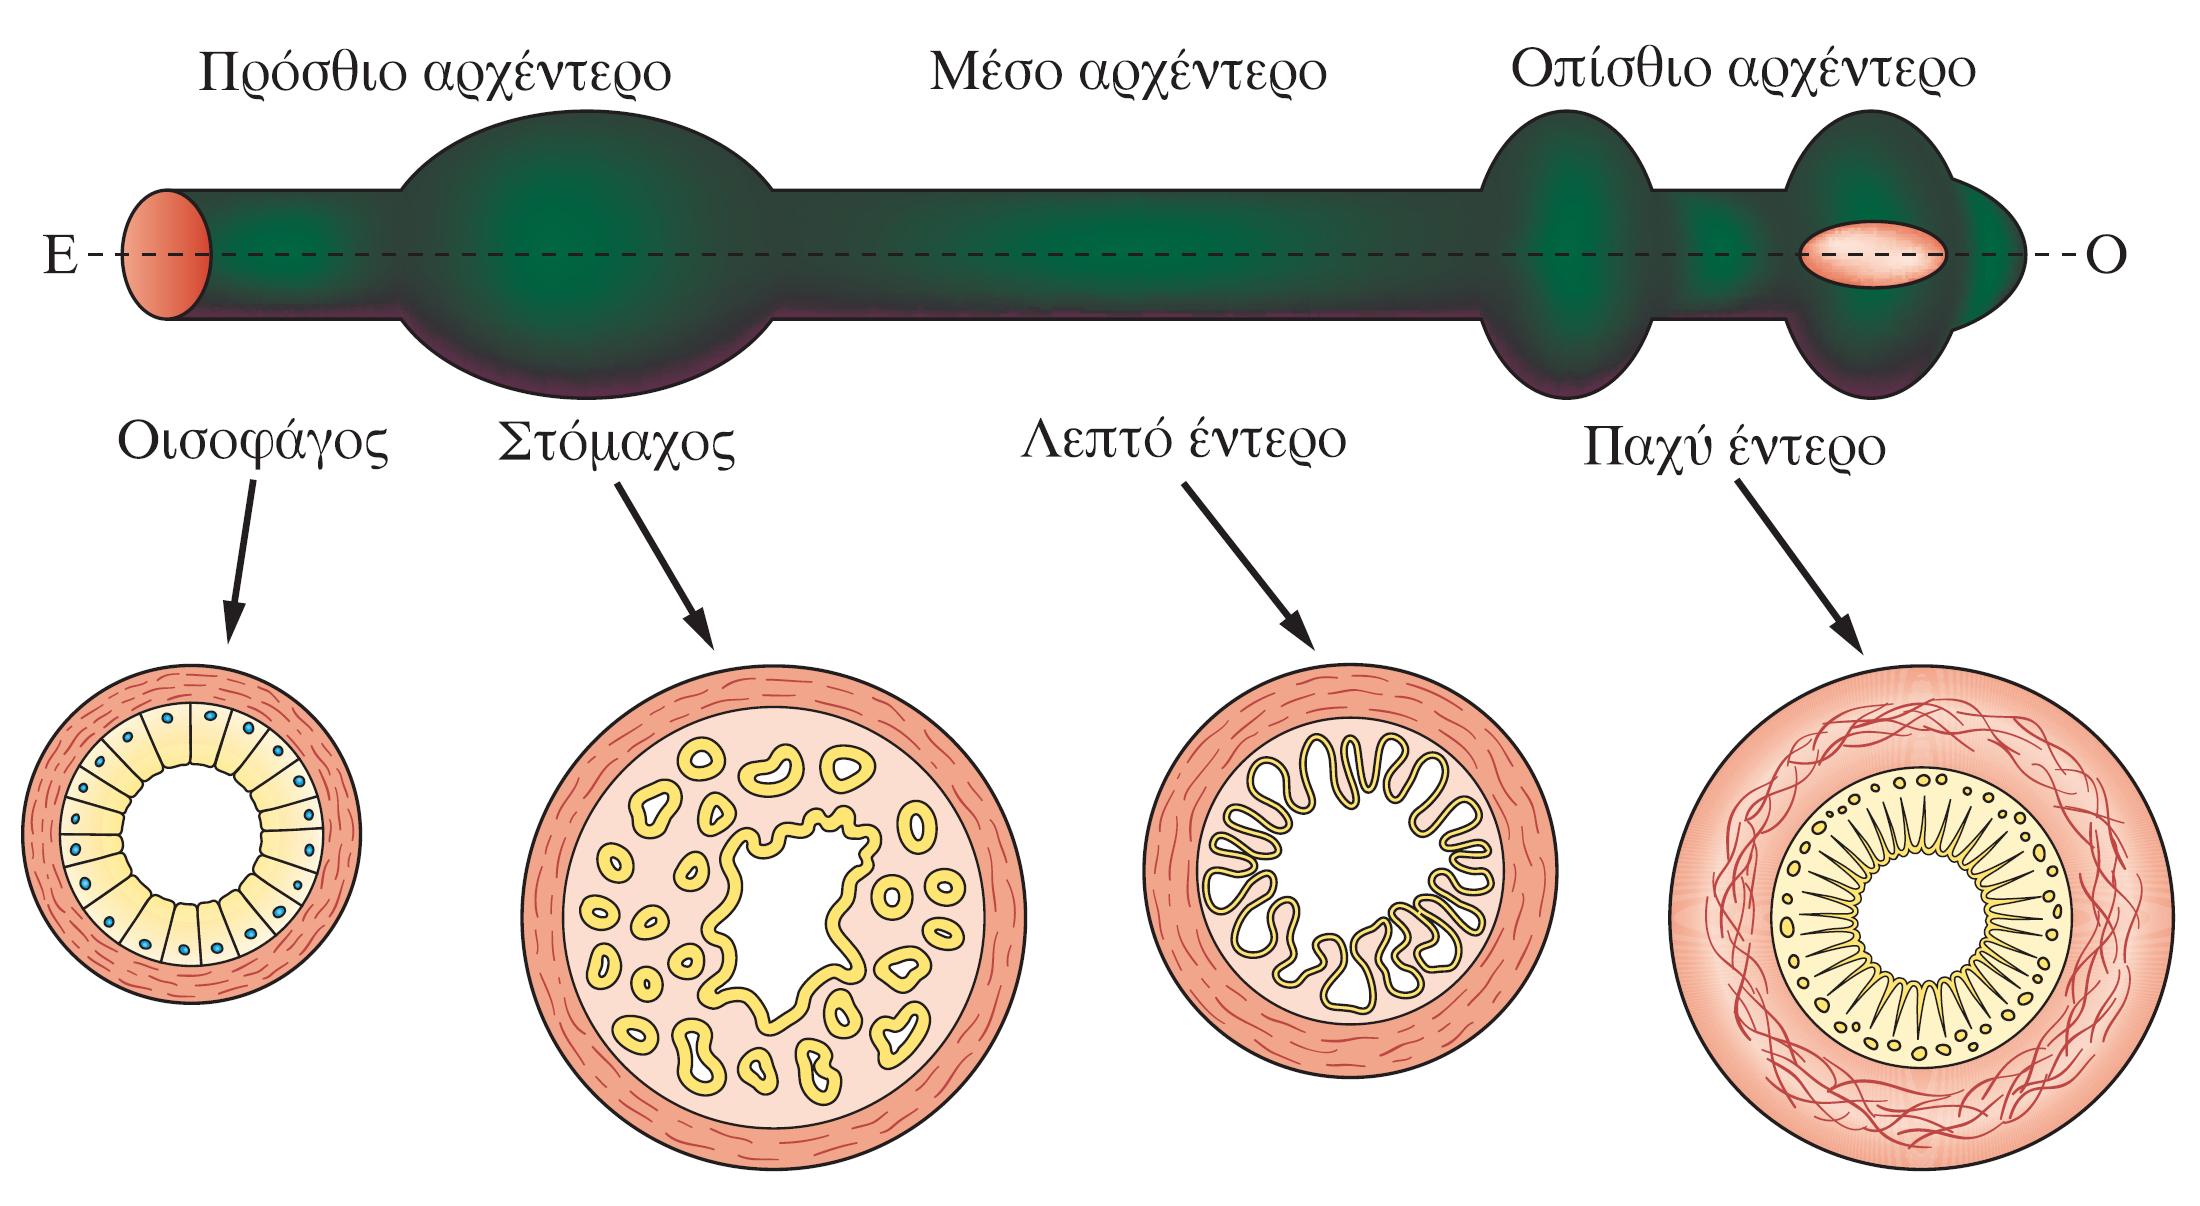 Σχηματισμός γαστρεντερικού σωλήνα στα αμνιωτά Η οργάνωση του ΓΣ είναι ίδια σε όλα τα σπονδυλωτά Φυσιολογική ανάπτυξη Πυλωρικός σφιγκτήρας HCl πεψίνη κυλινδρικό πολύστιβο πλακώδες επιθήλιο